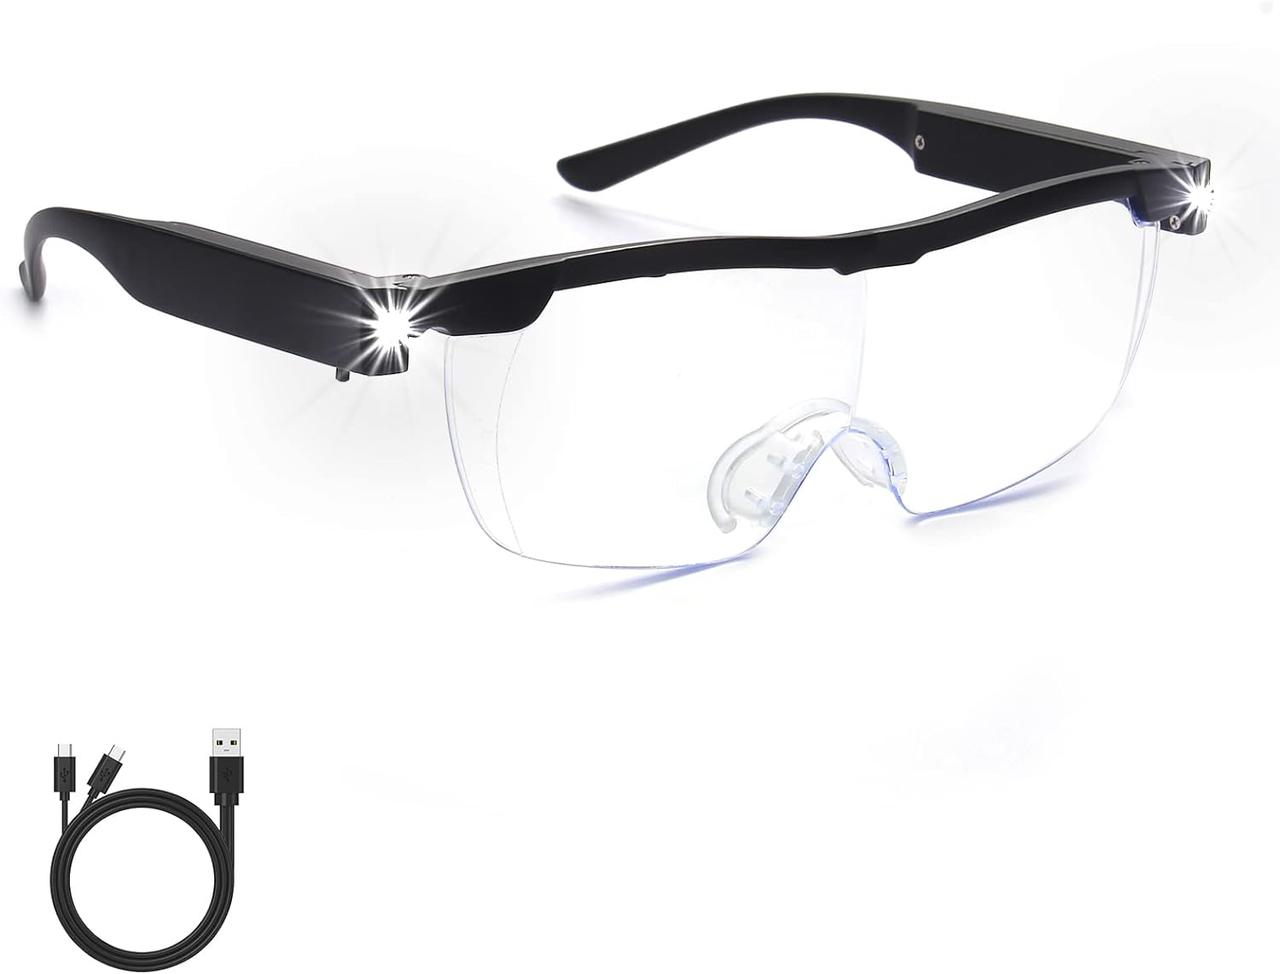 Збільшувальні окуляри SKYWAY зі світлодіодним підсвічуванням, для читання, близької роботи, рукоділля, ювелірів, вишивання, хобі.